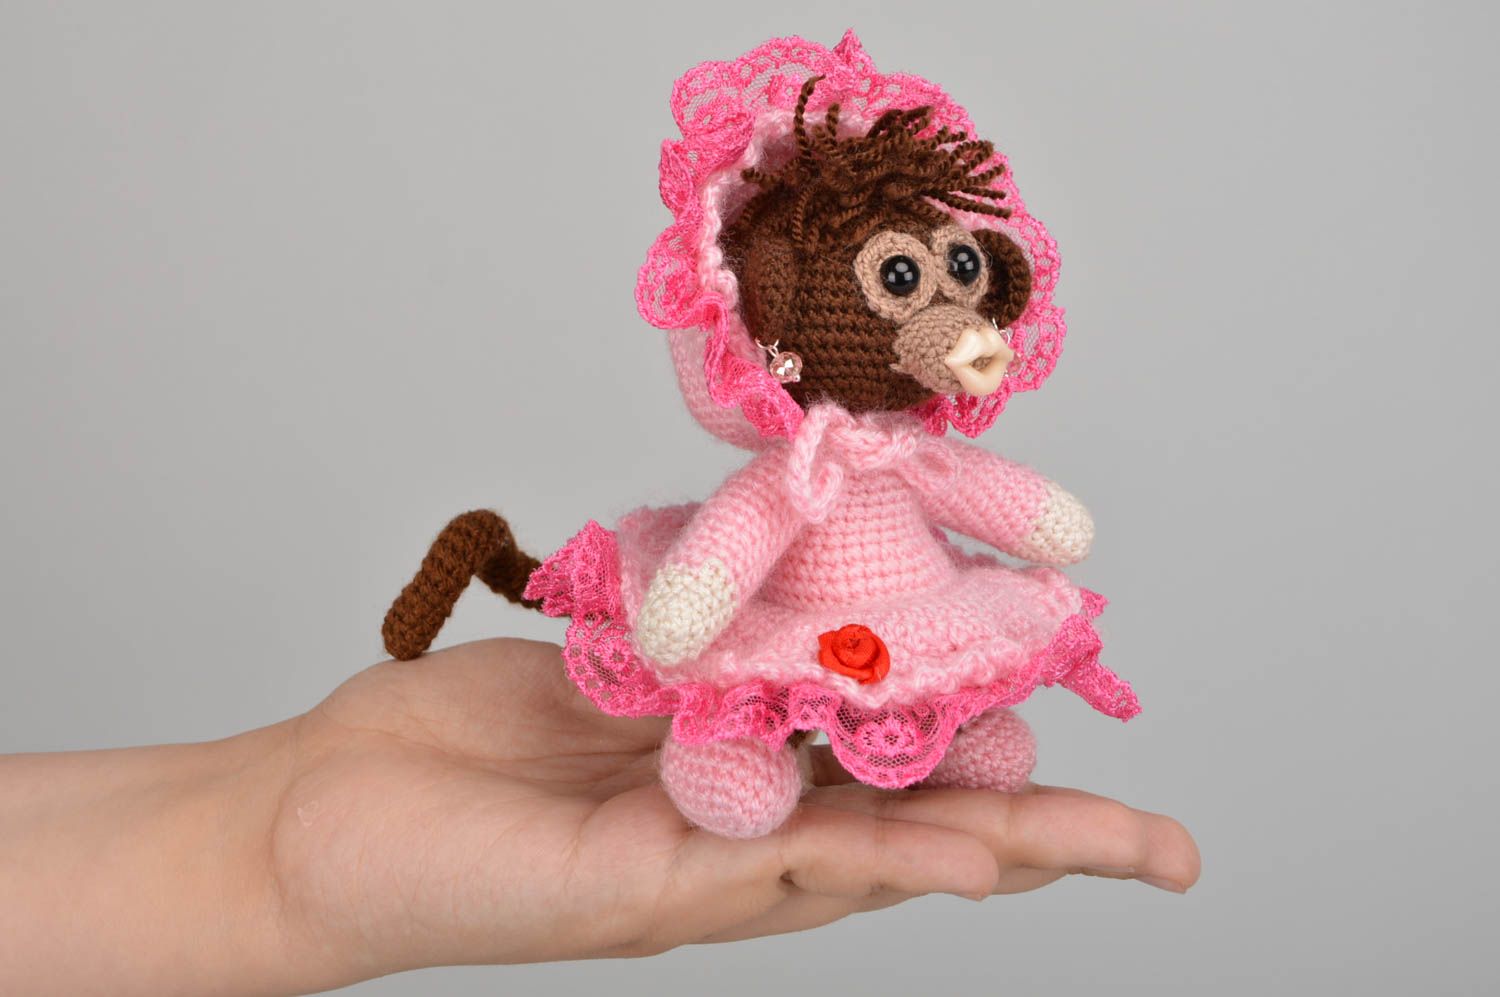 Мягкая вязаная игрушка обезьянка в розовом наряде из акриловых ниток хендмейд фото 5